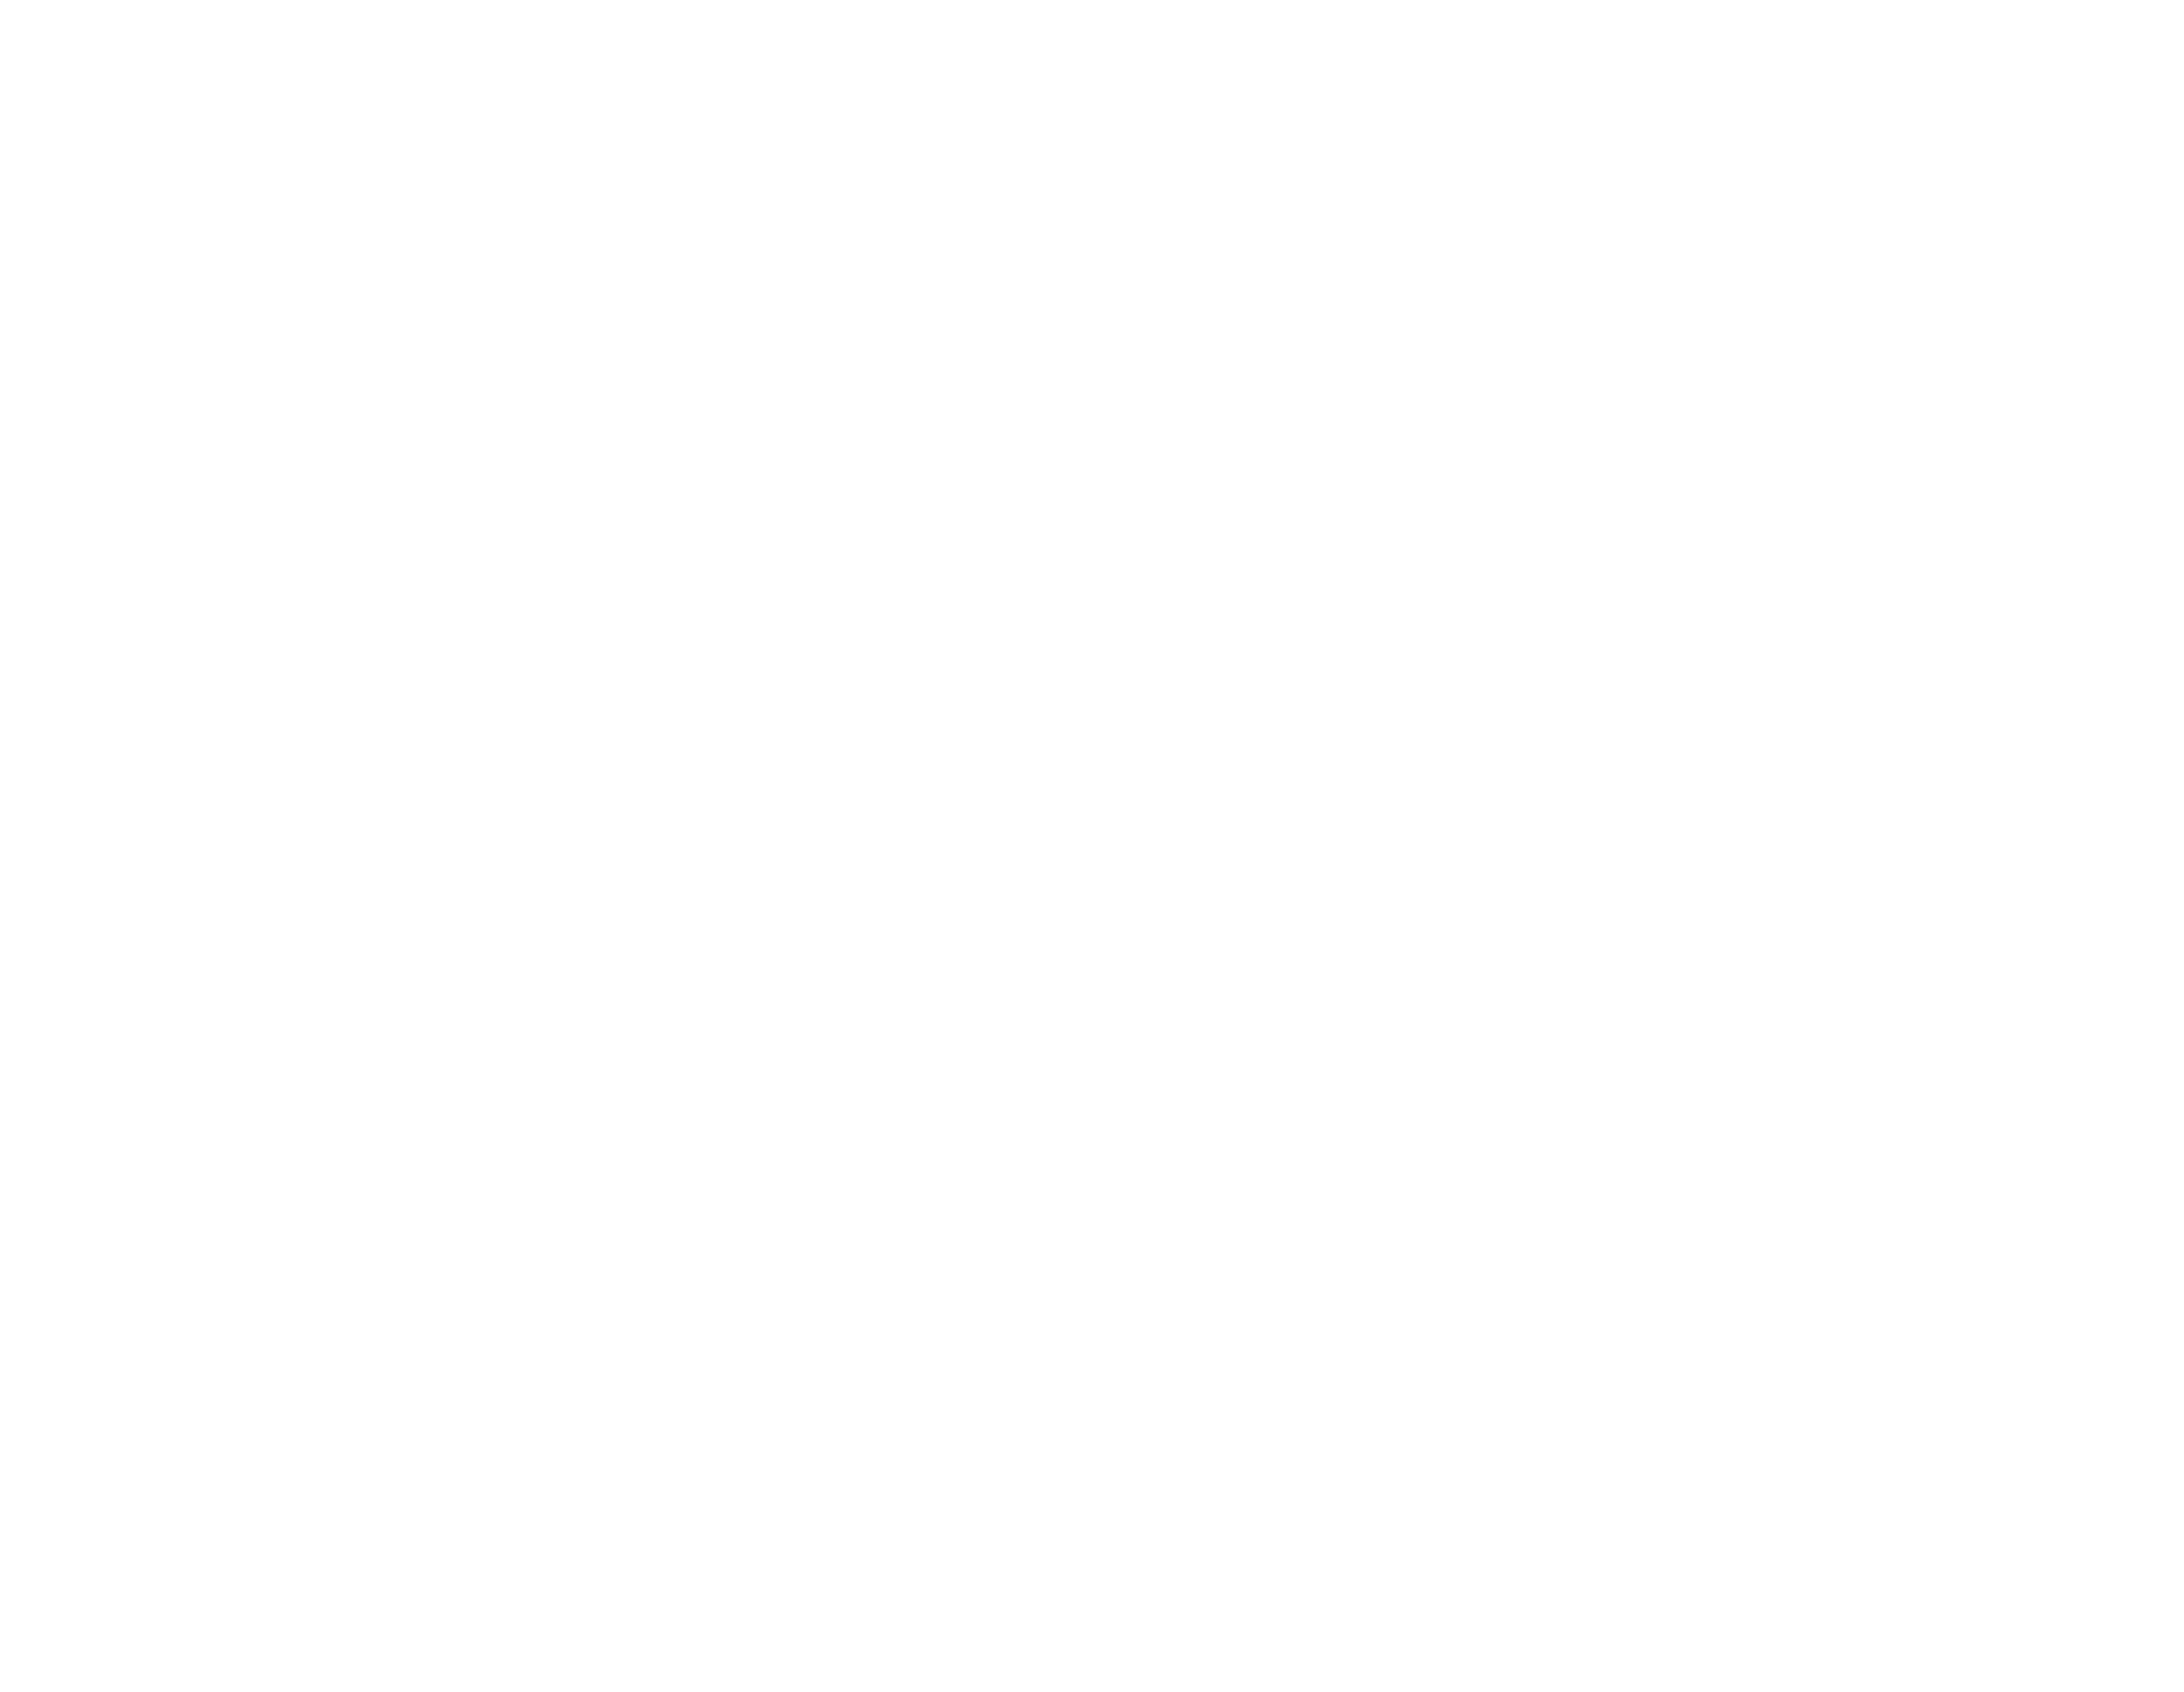 BARI HI-END